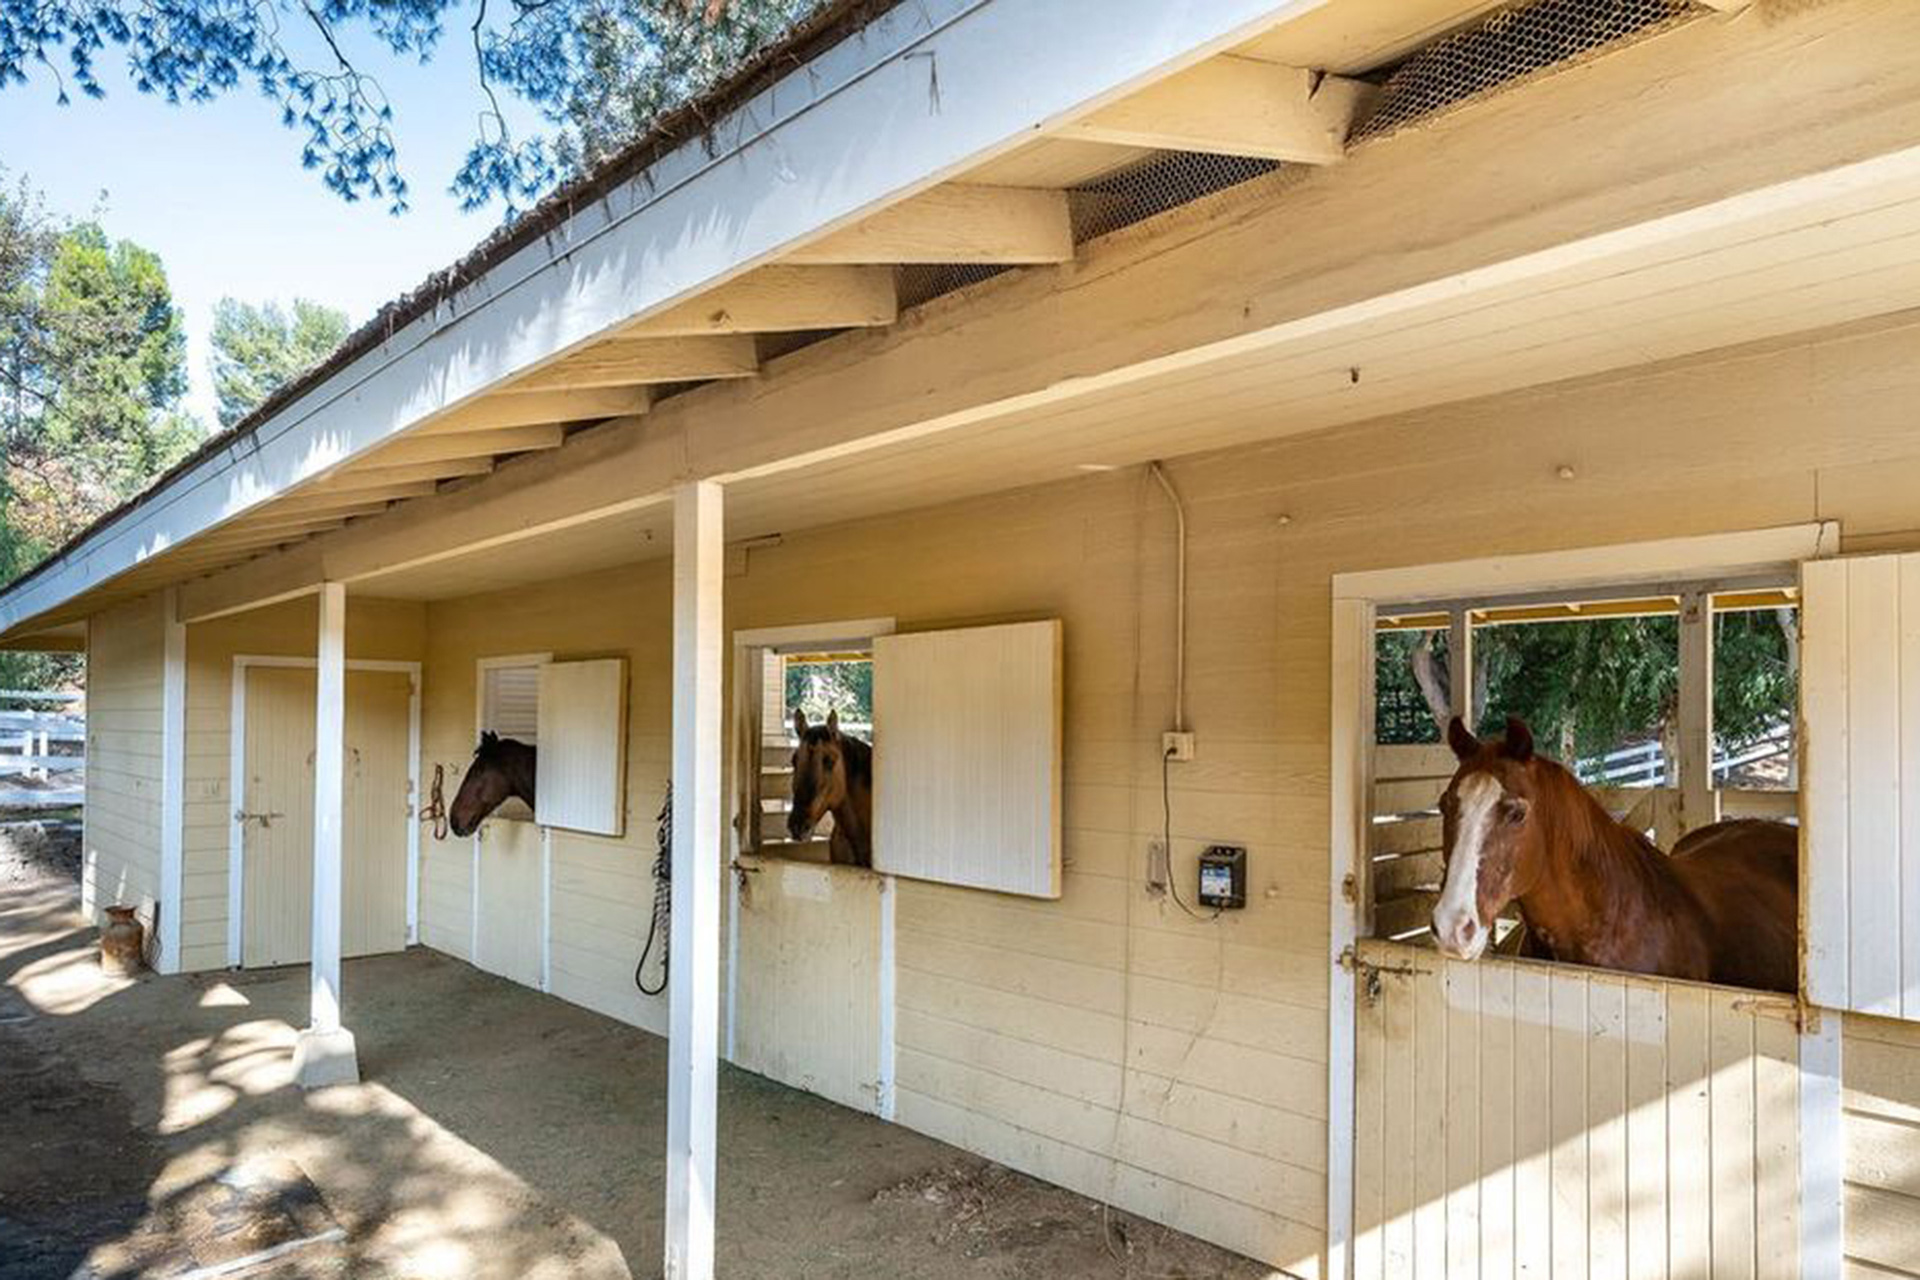 La nueva casa del rapero también cuenta con un establo para tres caballos